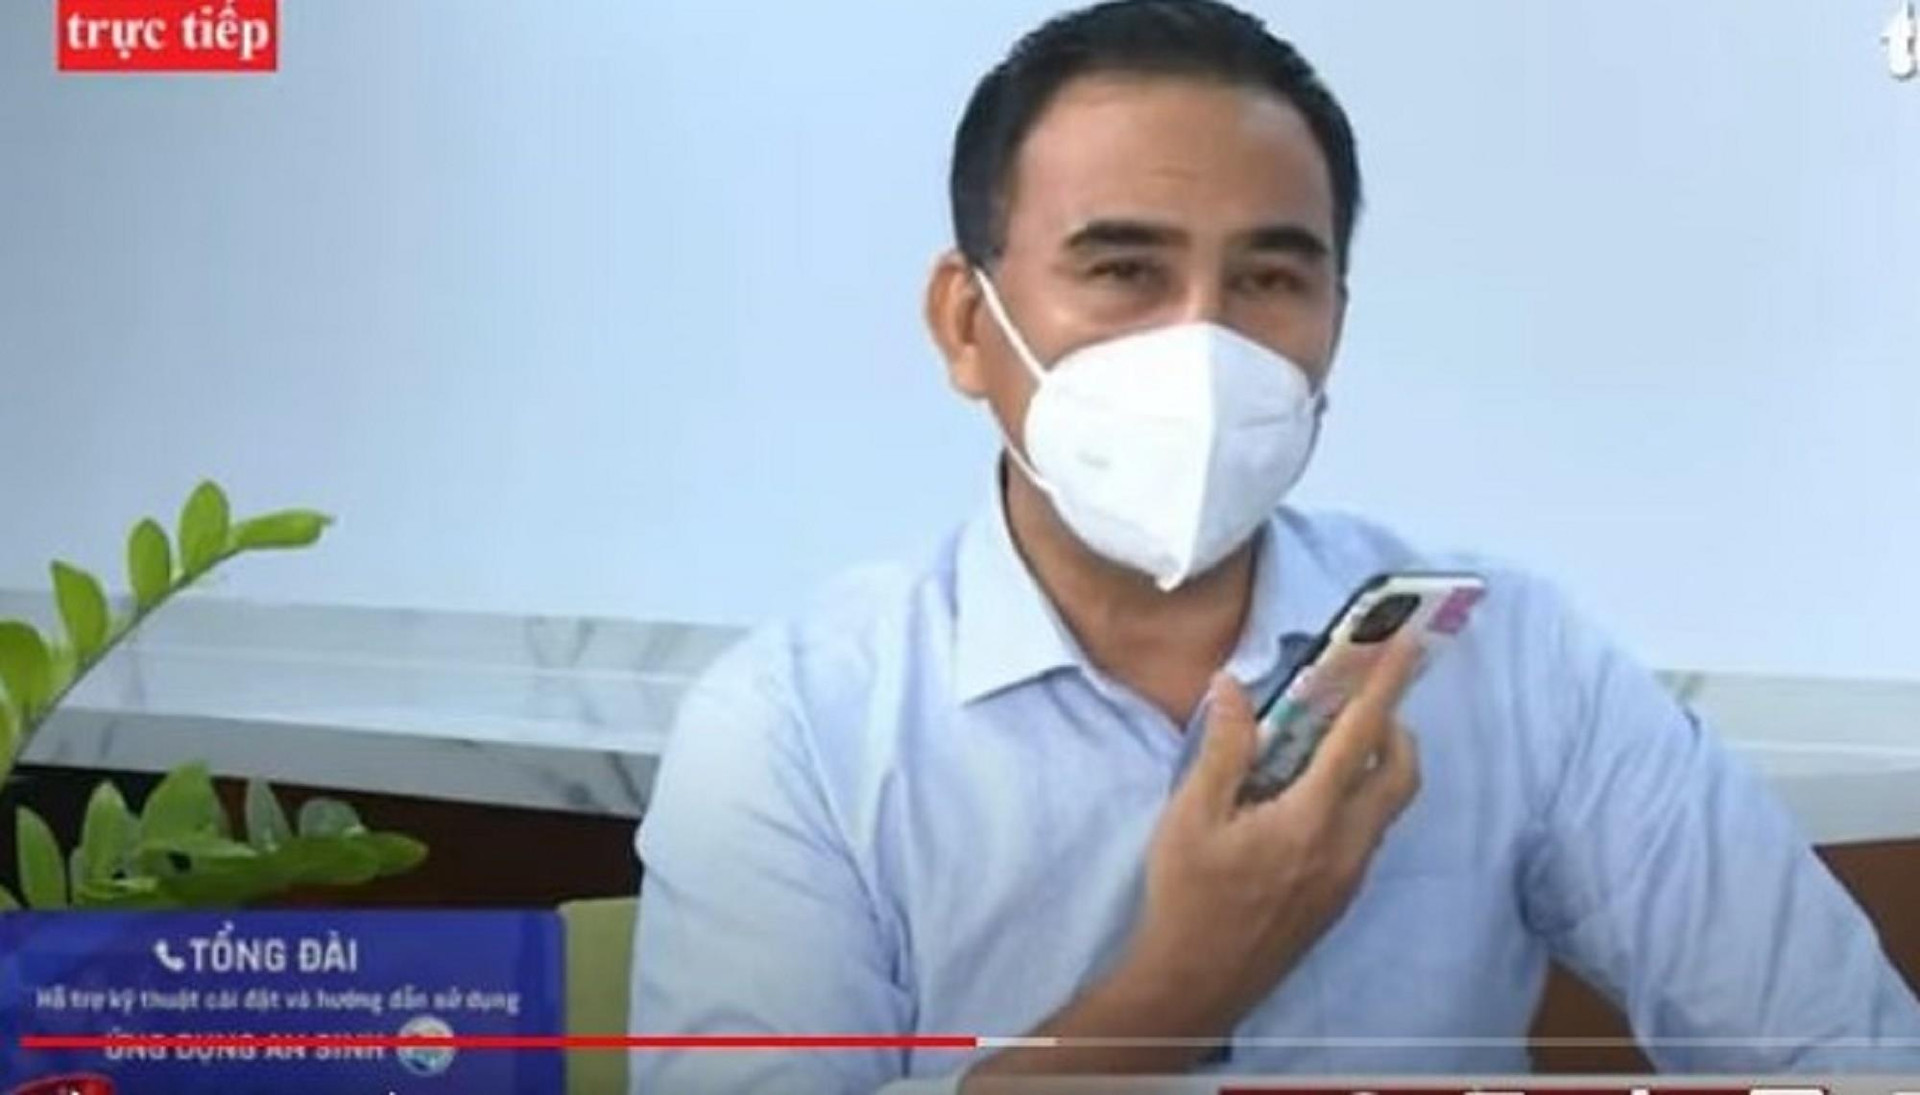 Quyền Linh gặp sự cố với điện thoại ngay trên sóng livestream - 1